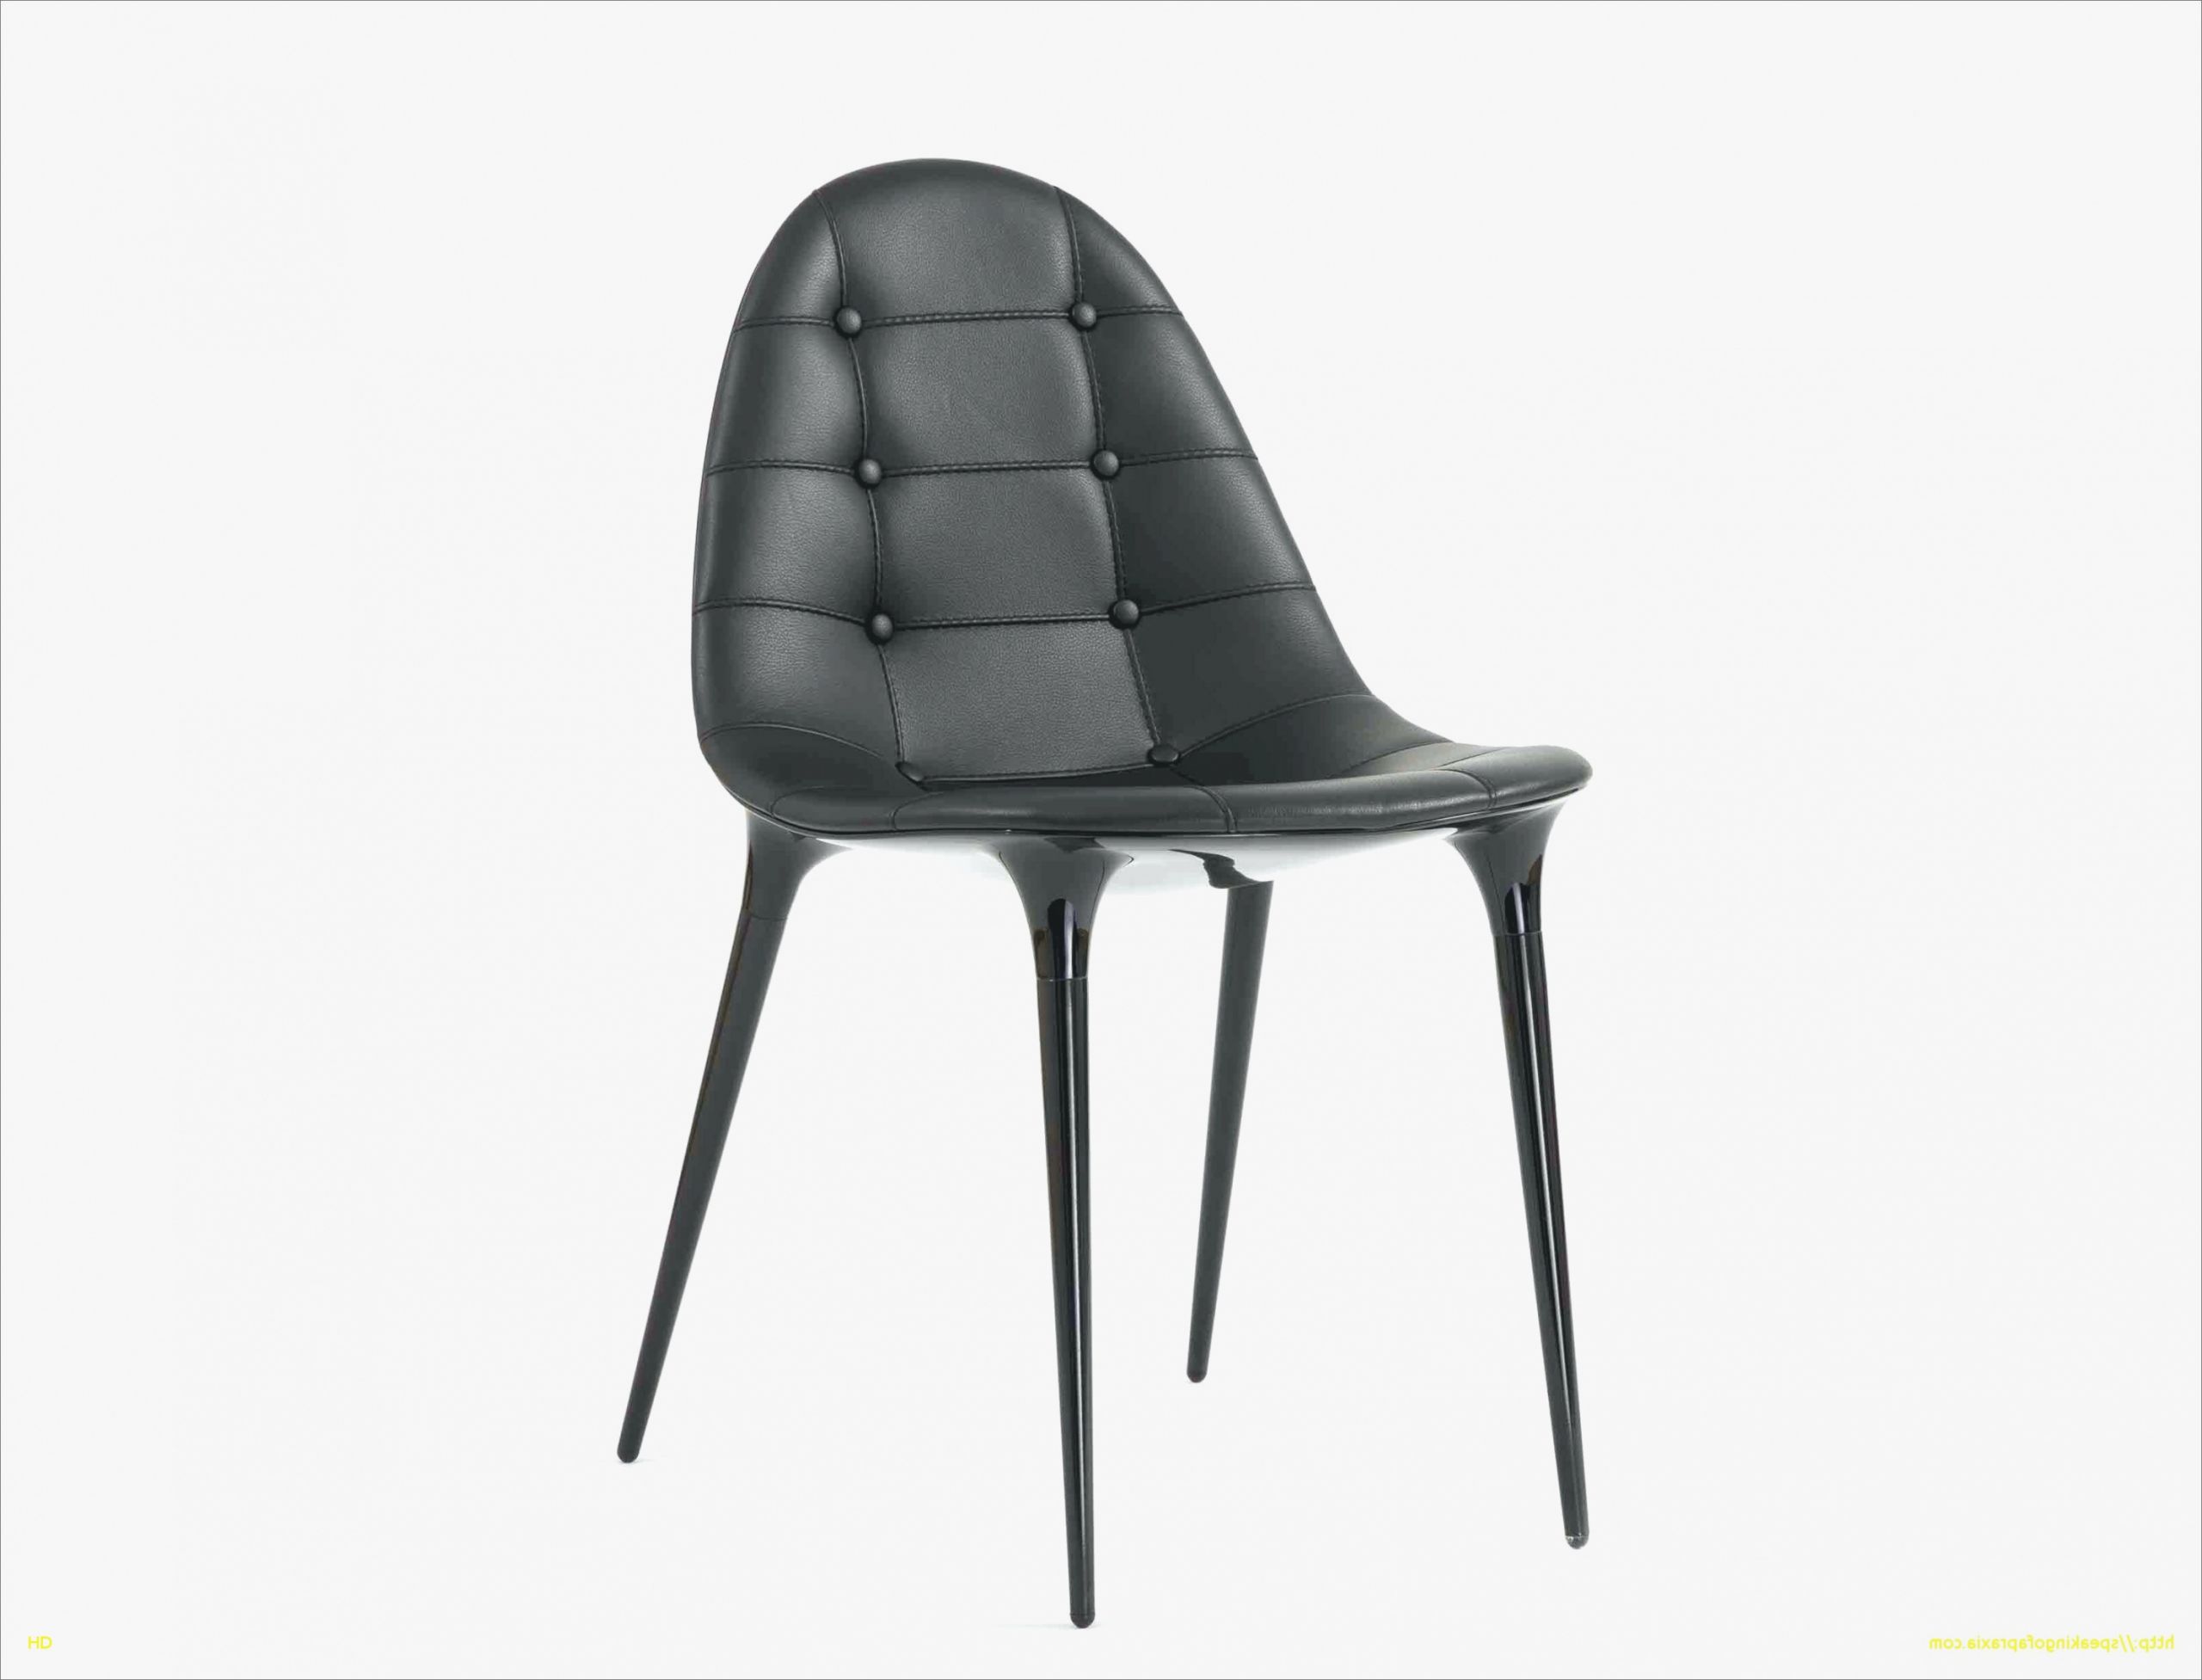 chaise pas cher design beau cuisine pour t2 simulateur cuisine ikea meilleur de chaise design 0d of chaise pas cher design